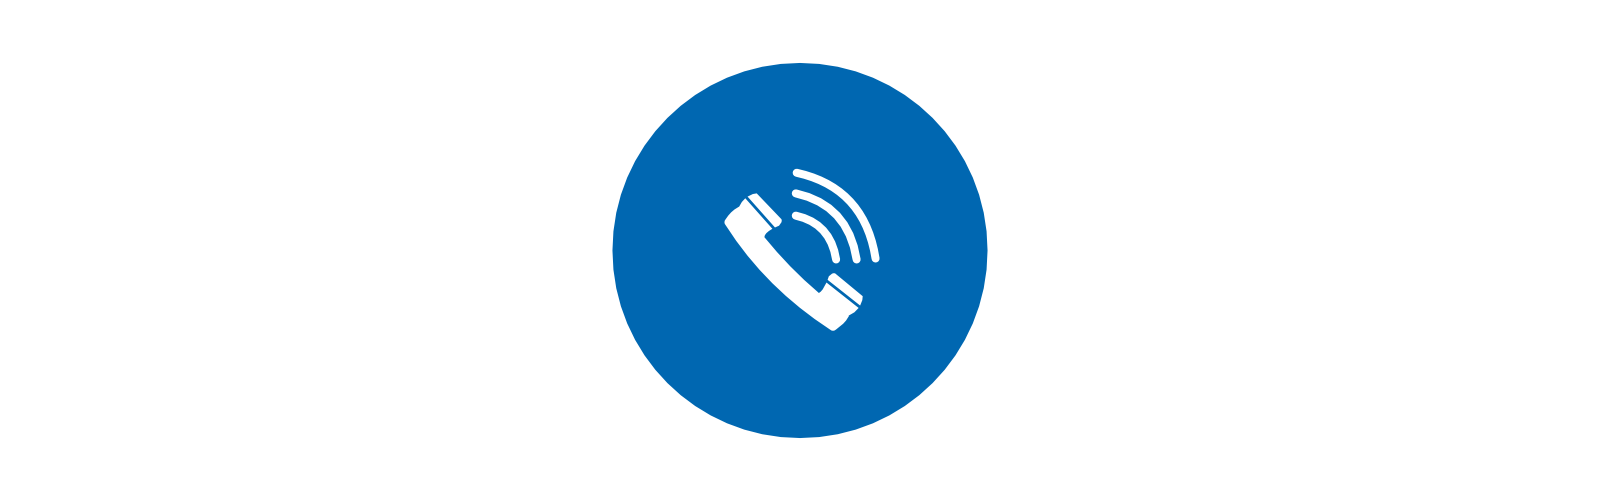 l'icône d'un téléphone blanc avec des ondes dans un cercle bleu.